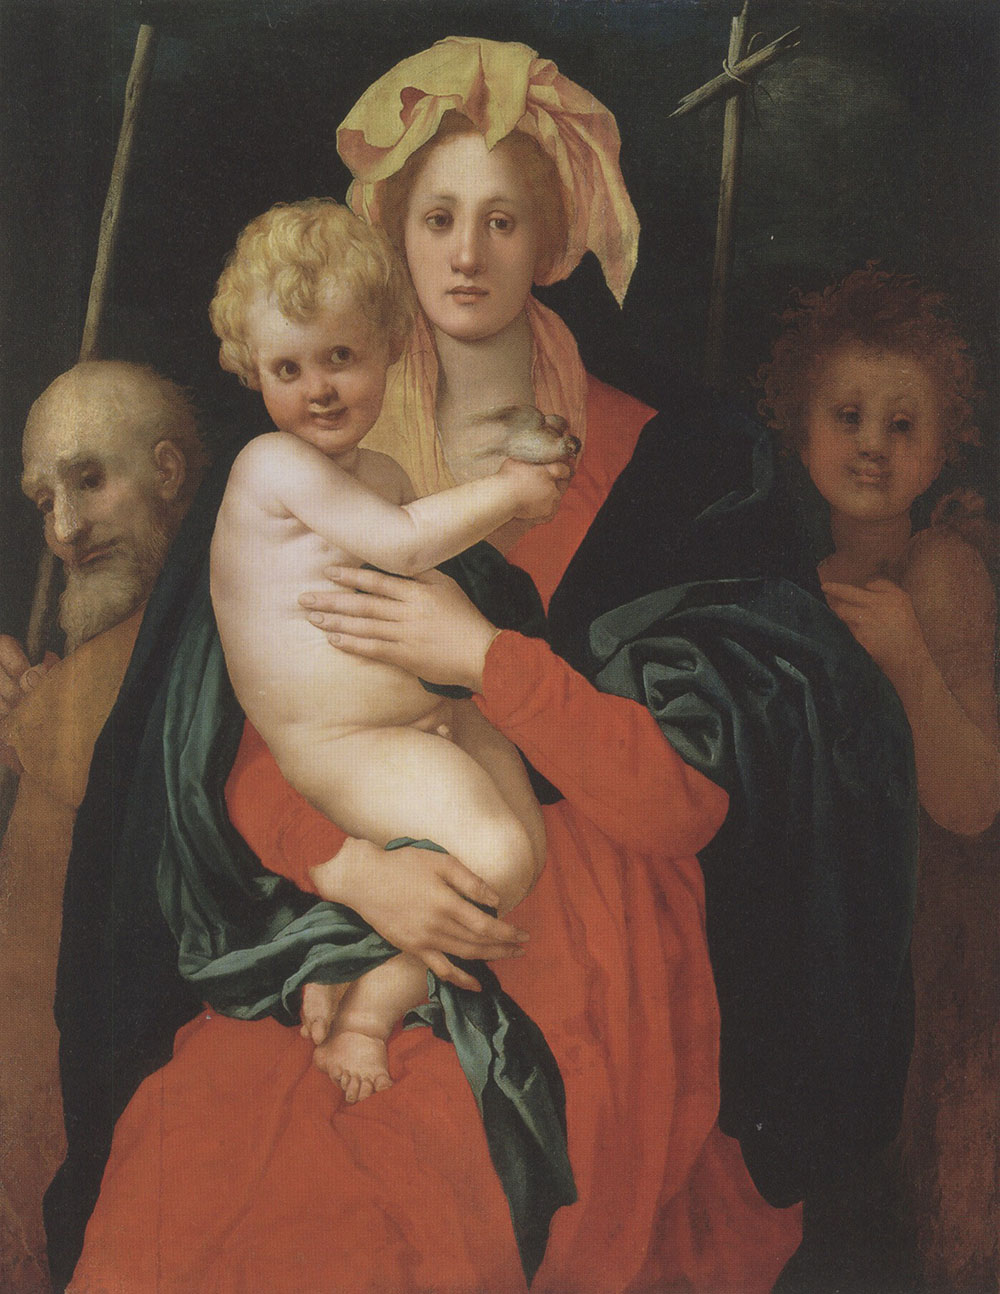 Понтормо )Якопо Карруччи). "Мадонна с Младенцем, со святым Иосифом и Иоанном Крестителем". 1520-е. Эрмитаж, Санкт-Петербург.